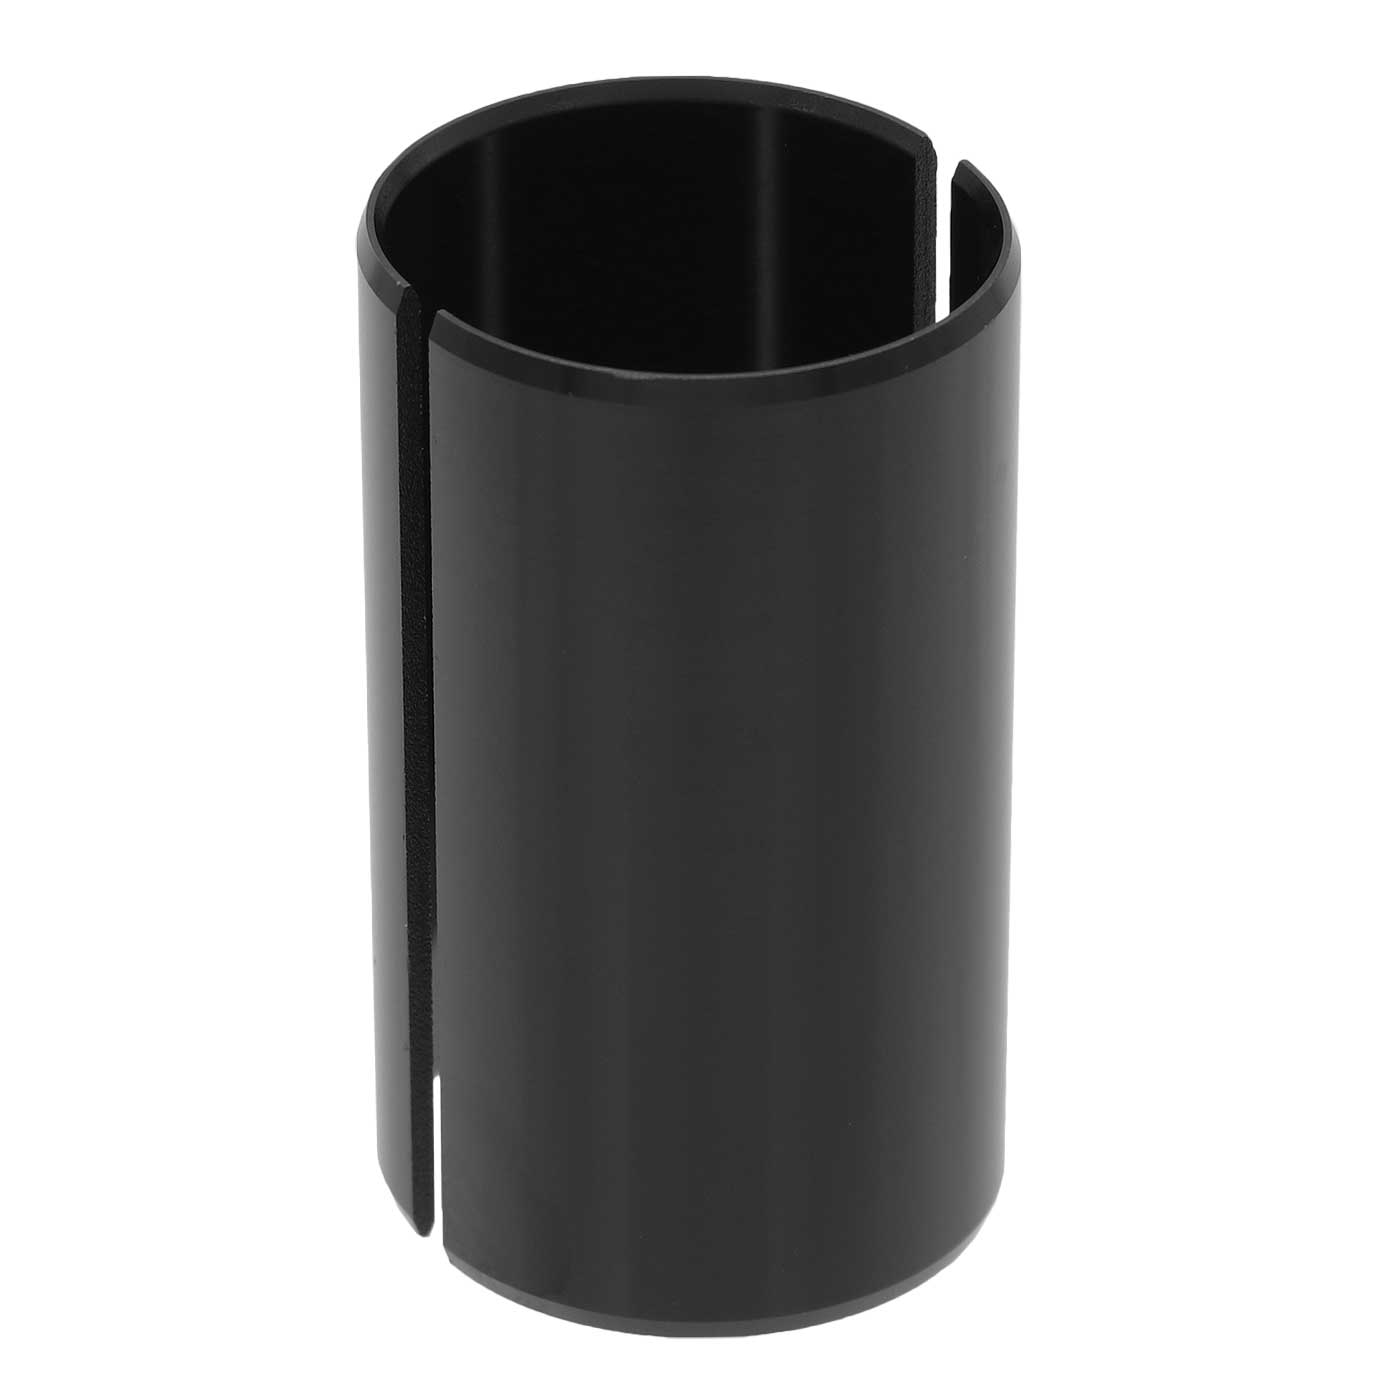 Imagen de Intend Blackline Adaptador Reductor - Extension Handlebar Sleeve - Potencia 35mm a Manillar 31,8mm